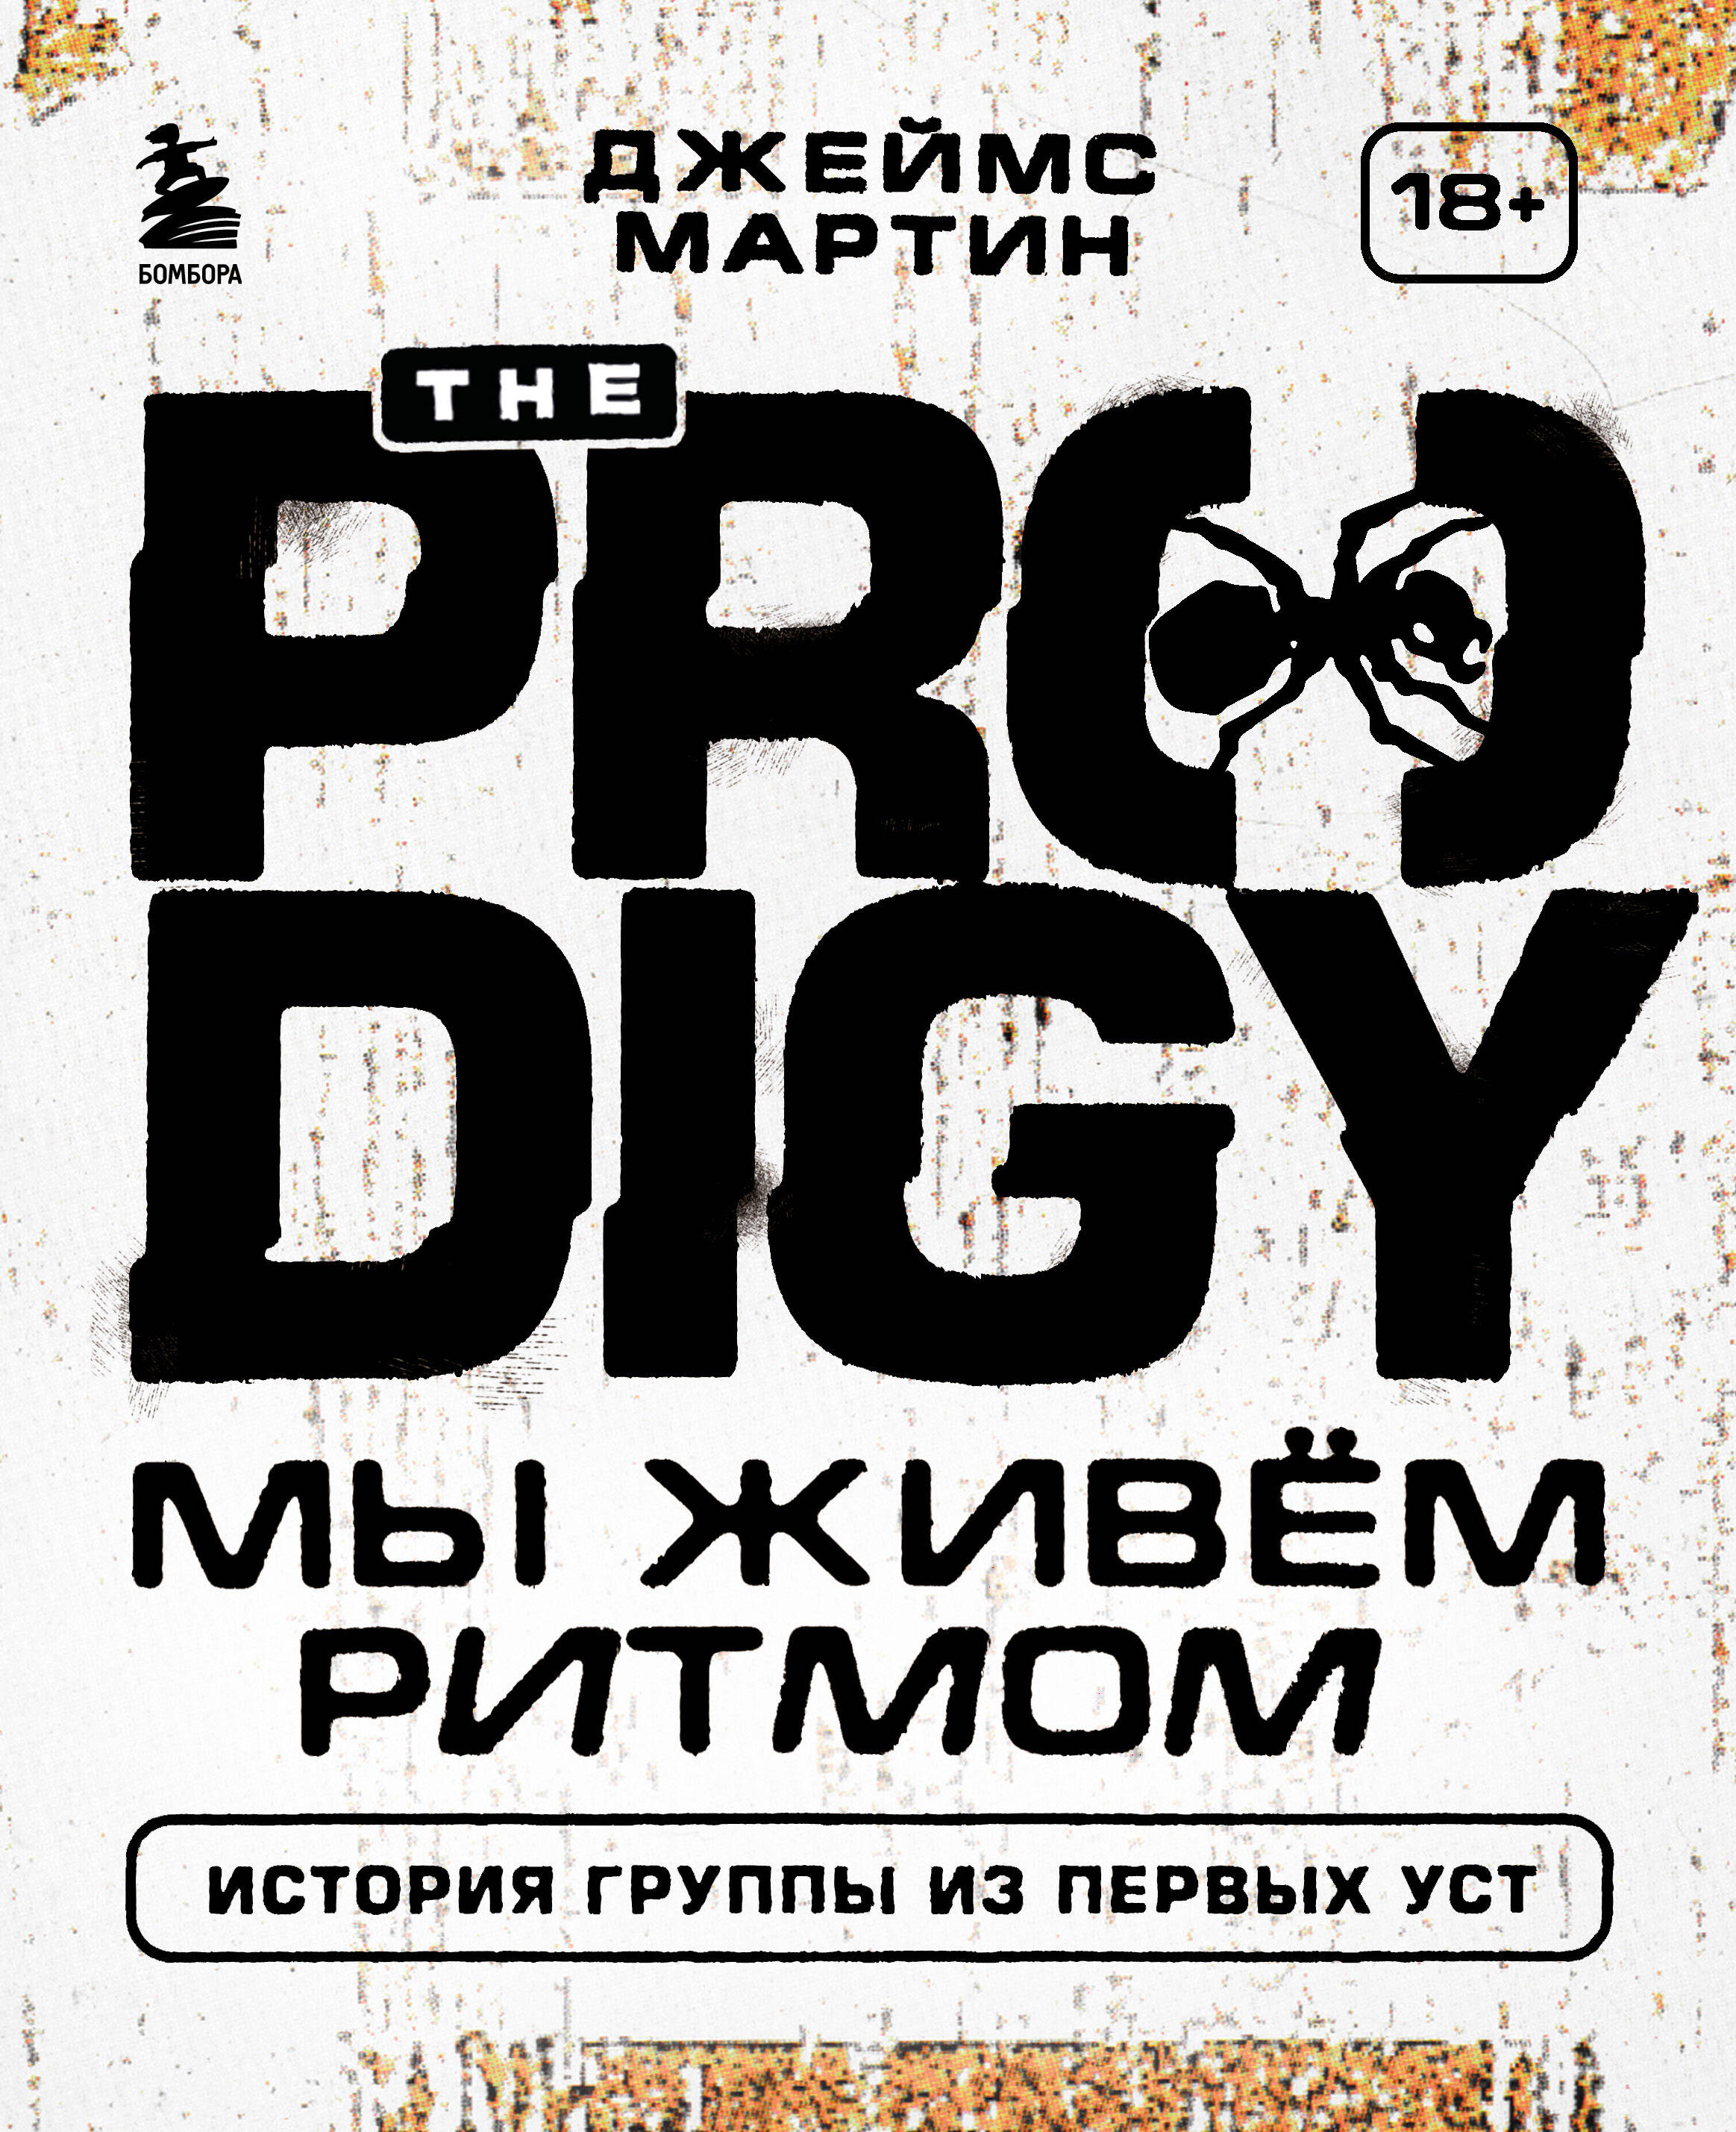 история the prodigy we eat rhythm the prodigy story Джеймс Мартин The Prodigy. Мы живём ритмом. История группы из первых уст